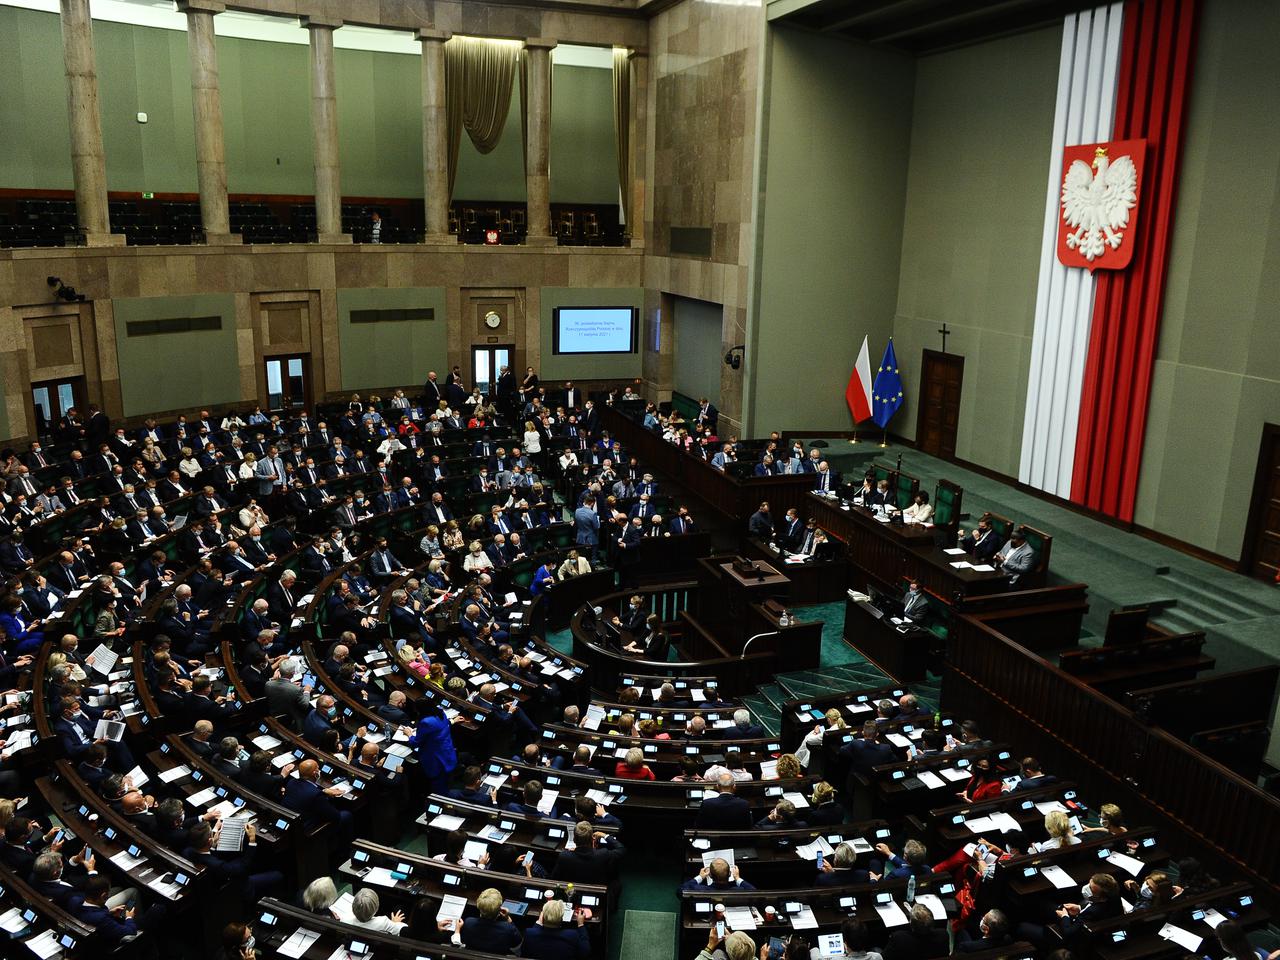 LEX TVN niespodziewanie ponownie w Sejmie! Znamy wyniki głosowania! Posłowie opozycji oburzeni wyszli z sali